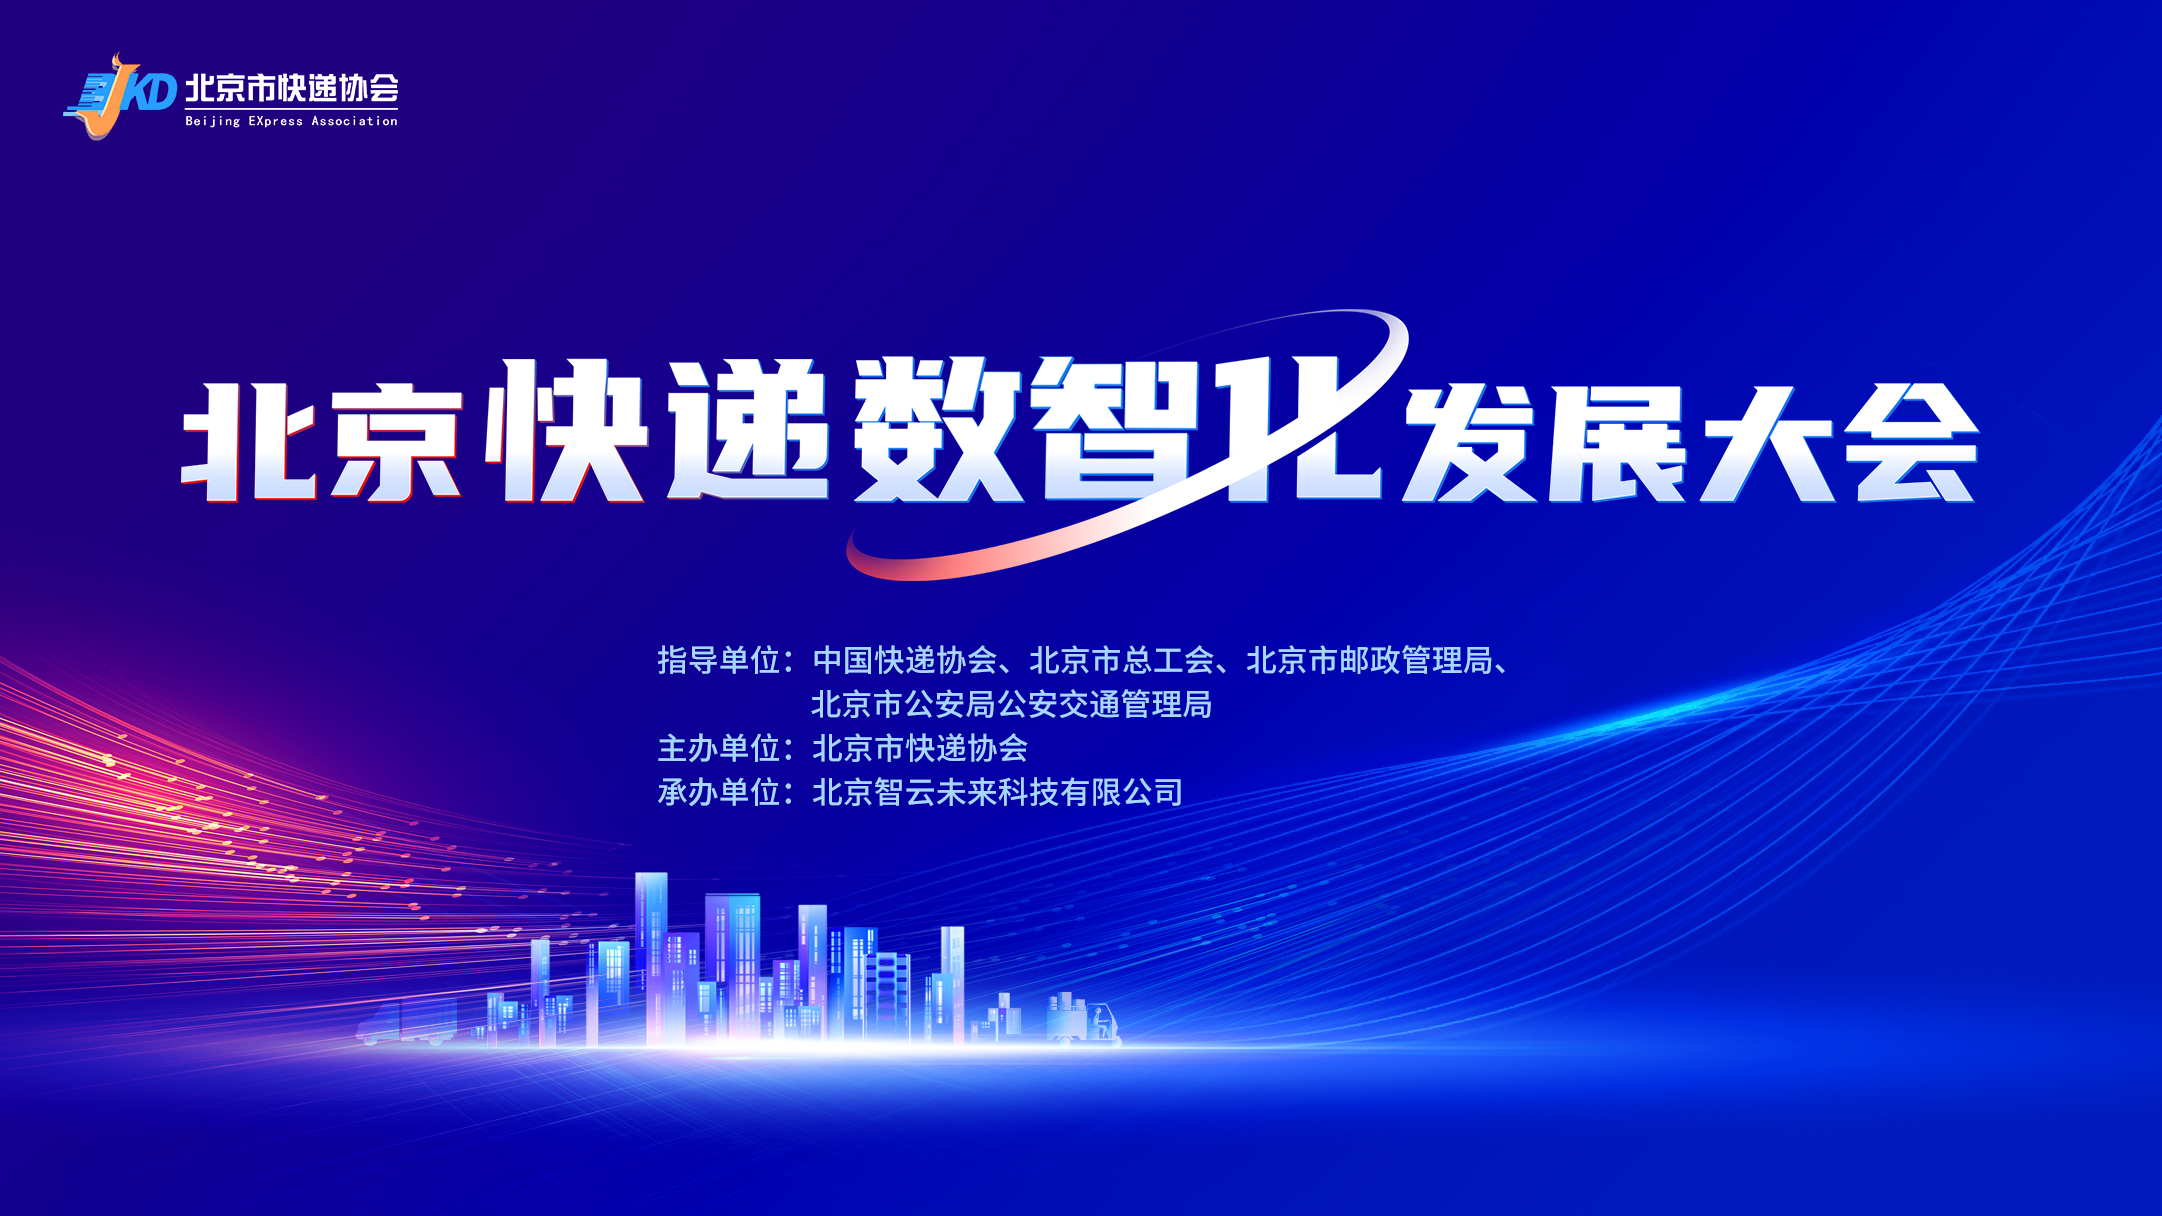 北京市快递协会成功举办北京快递数智化发展大会